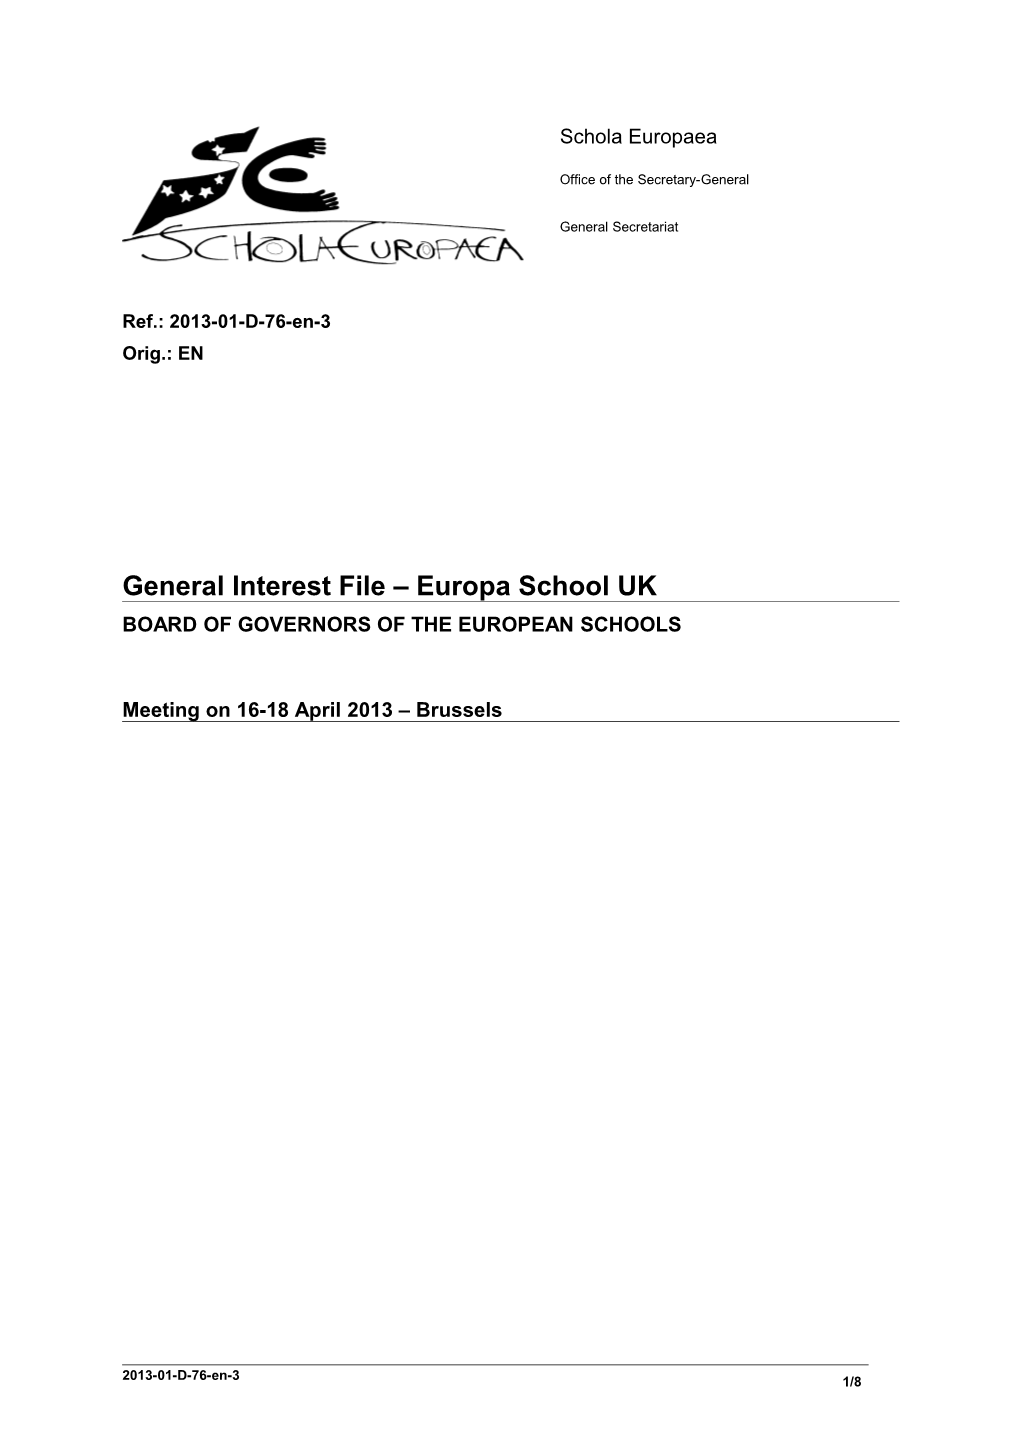 General Interest File Europa School UK